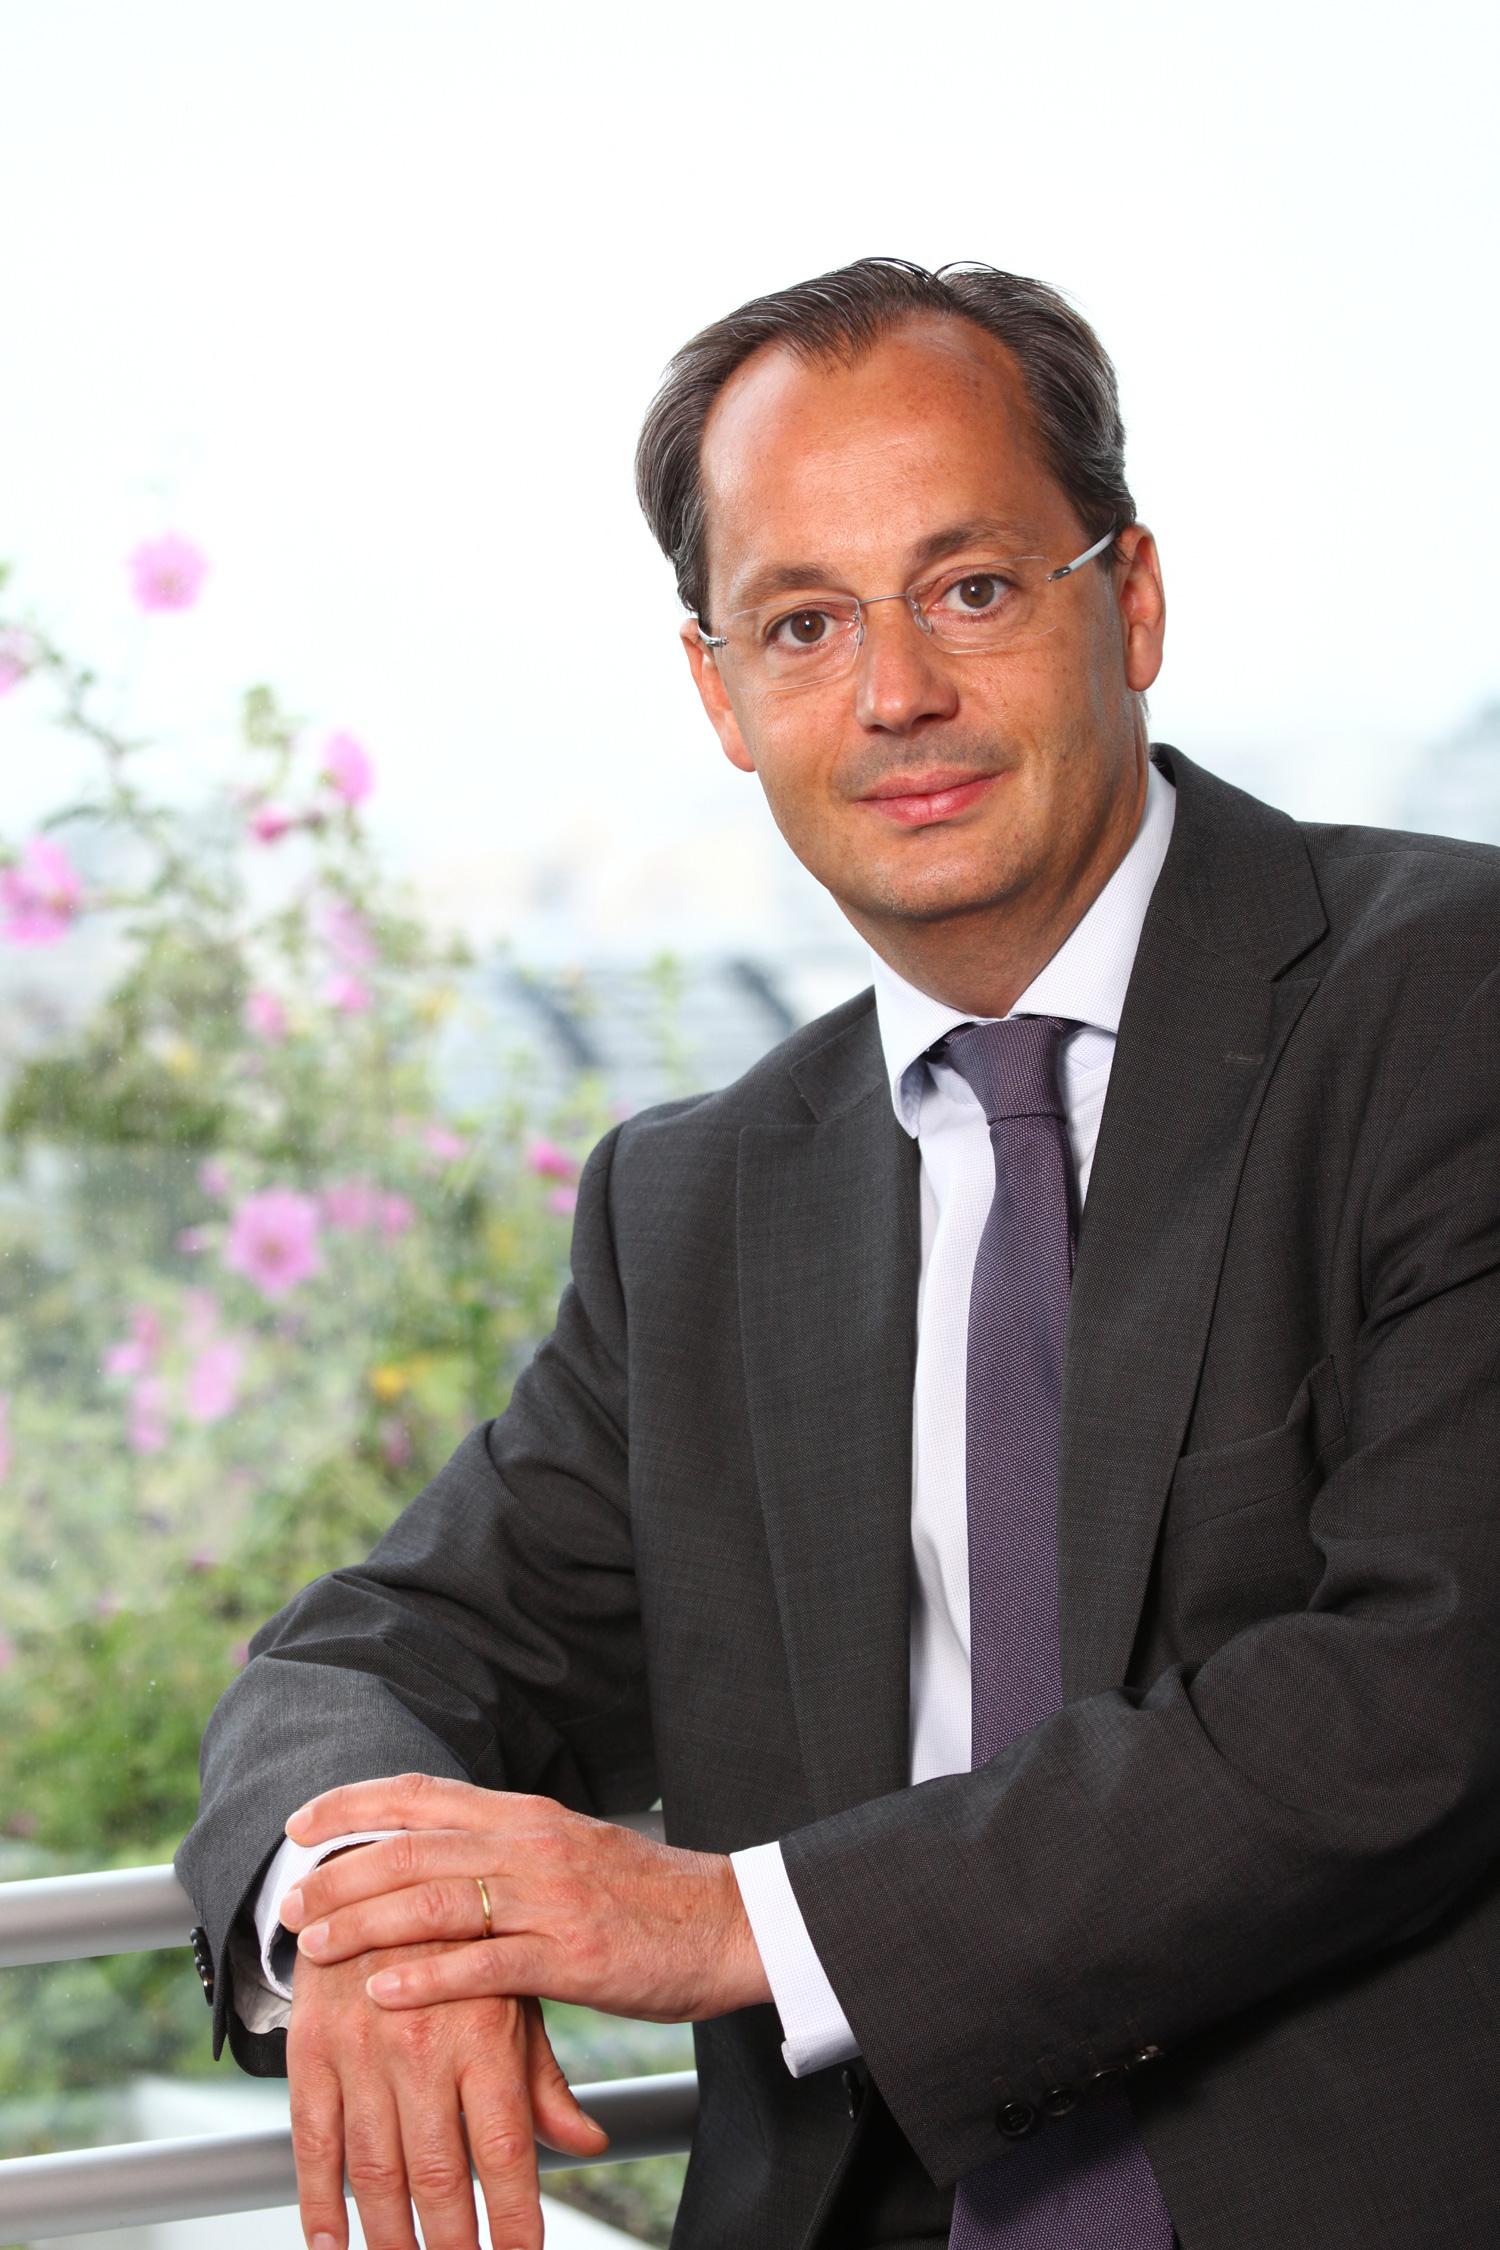 GEO Renewable Energy CEO Jérôme Pécresse